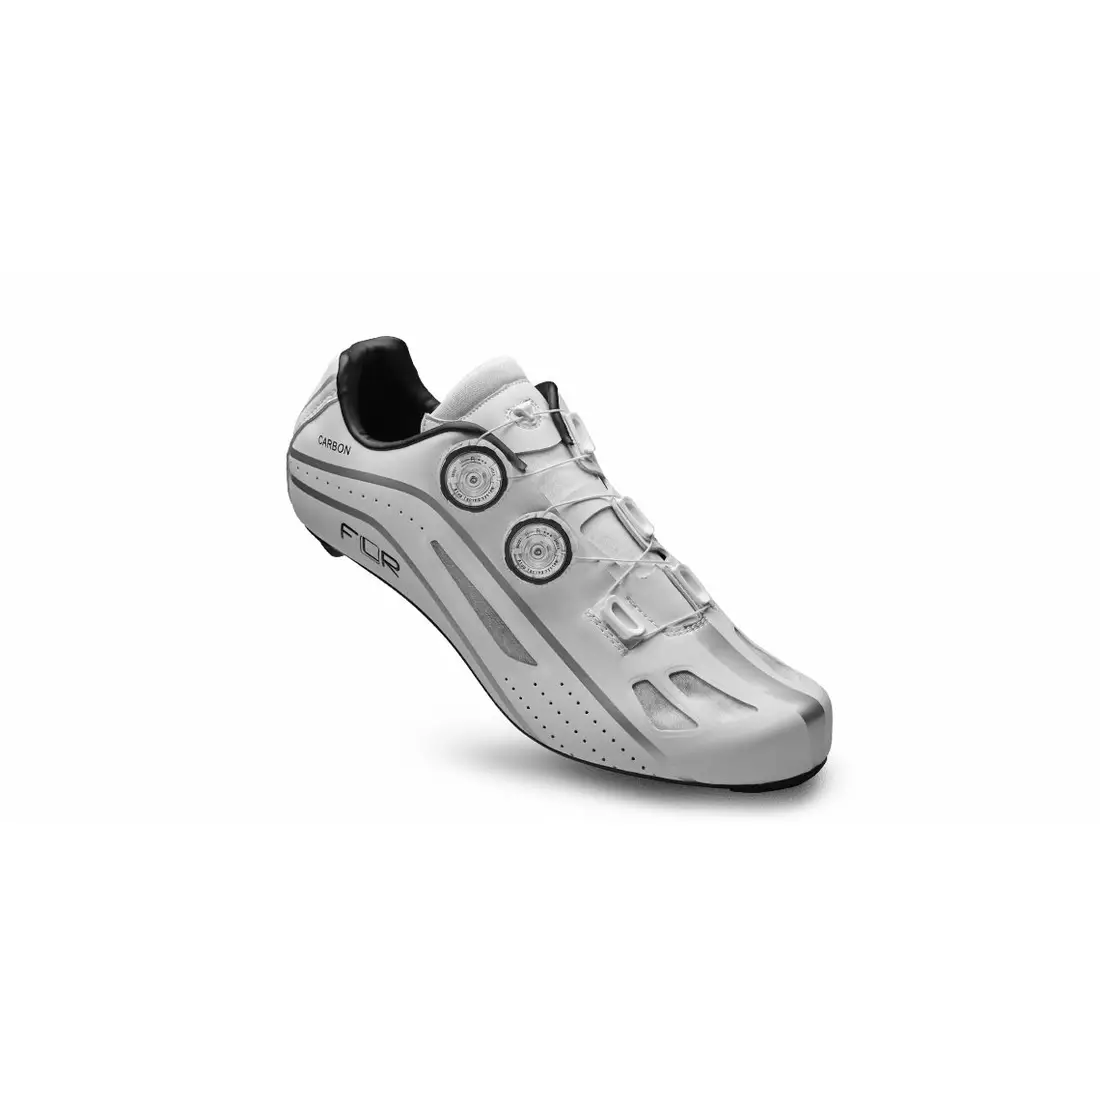 FLR F-XX cestná cyklistická obuv, full carbon, biely